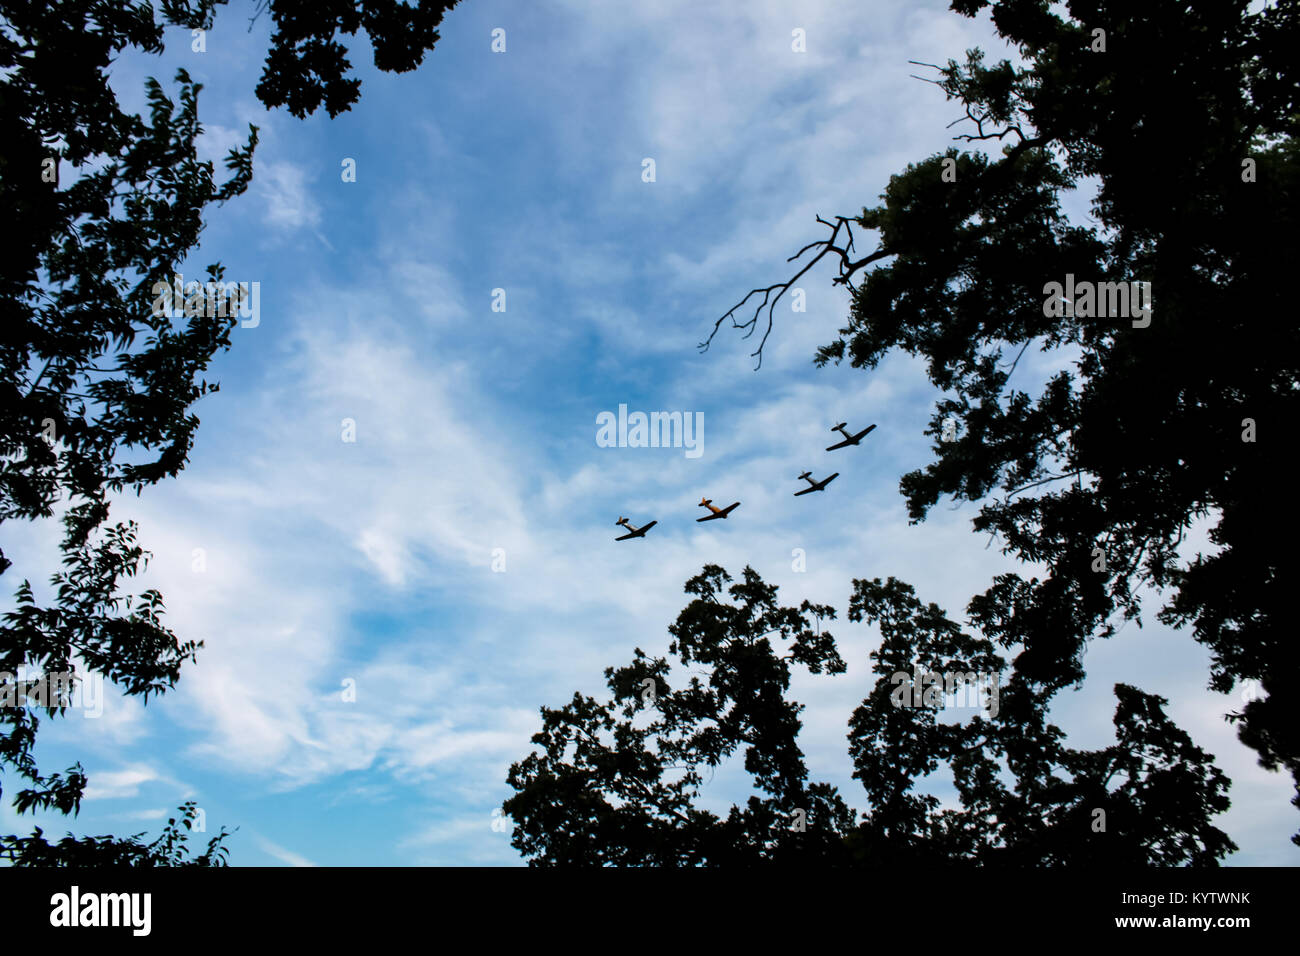 Air Show - 4 Flugzeuge, die in Formation gegen whispy Wolken im blauen Himmel von Zweigen gerahmt Stockfoto